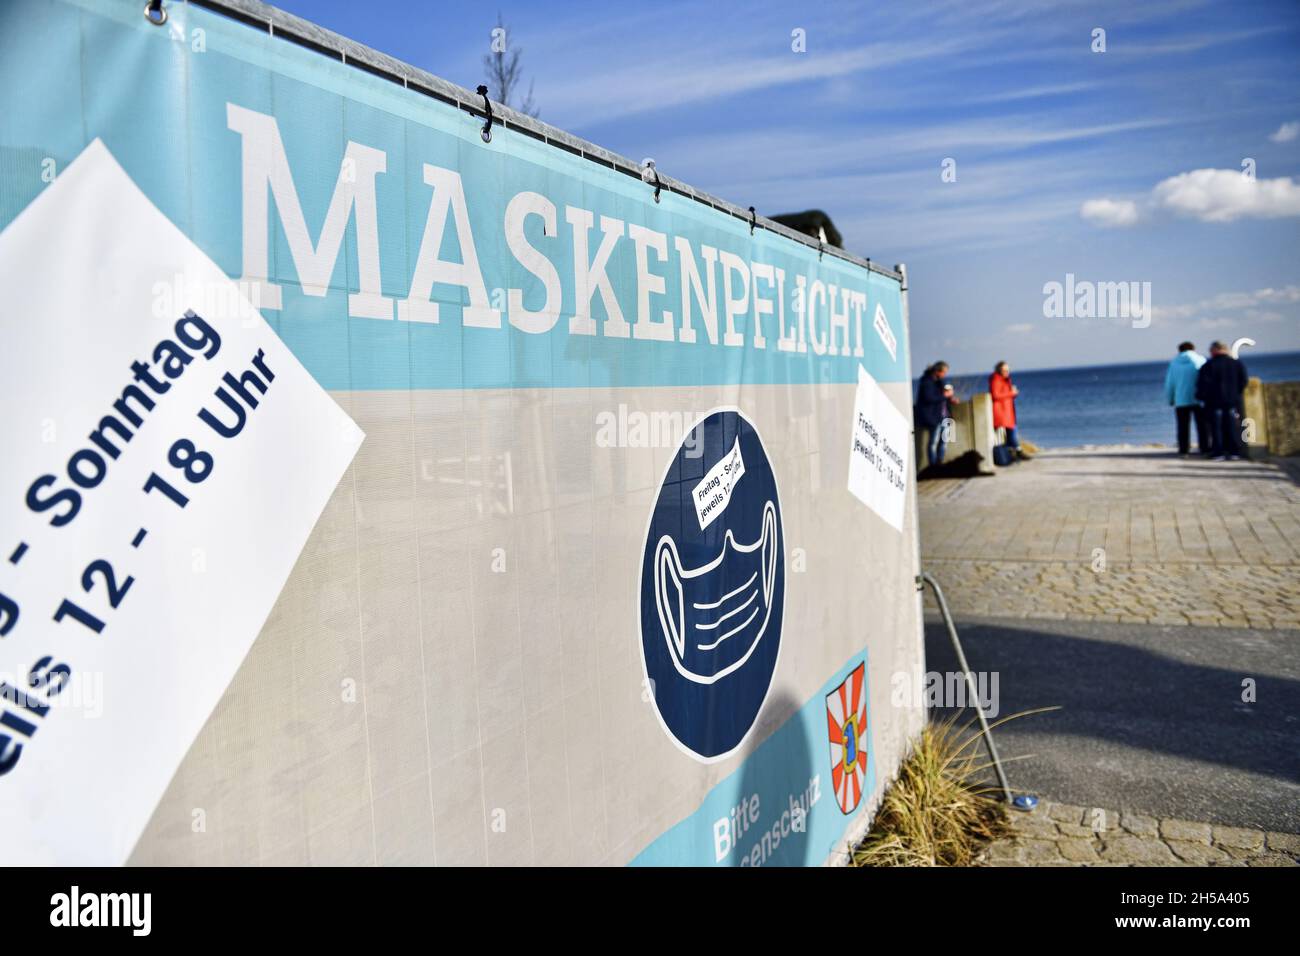 Maskenpflicht-Schild an der Strandpromenade à Haffkrug, Scharbeutz, Schleswig-Holstein, Deutschland, Europa Banque D'Images